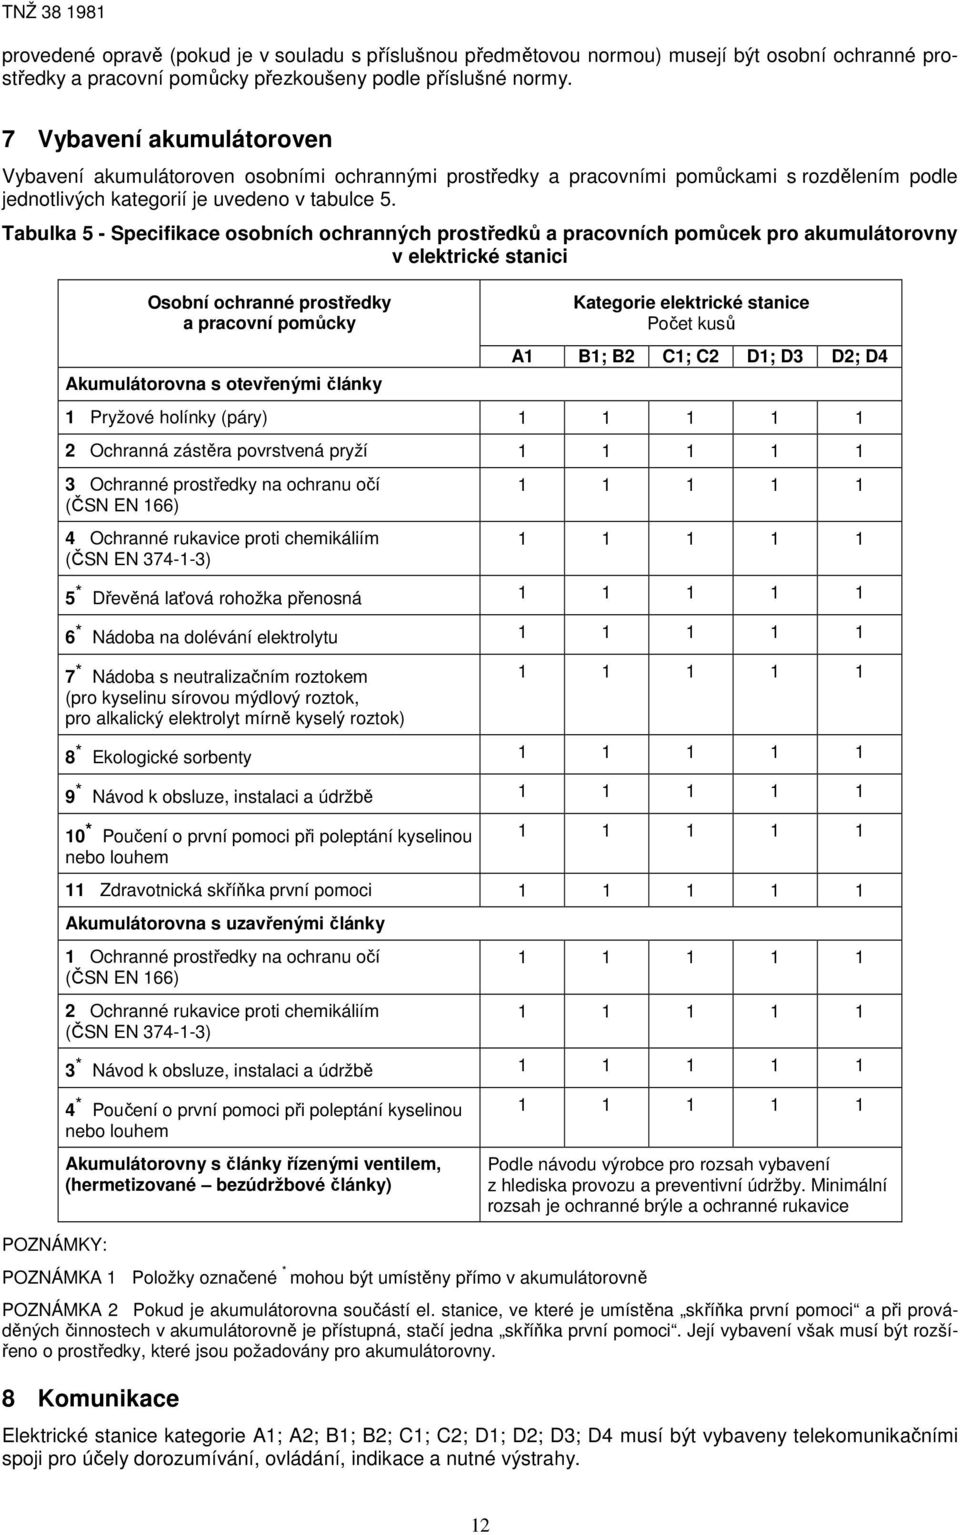 Tabulka 5 - Specifikace osobních ochranných prostředků a pracovních pomůcek pro akumulátorovny v elektrické stanici POZNÁMKY: Osobní ochranné prostředky a pracovní pomůcky Akumulátorovna s otevřenými